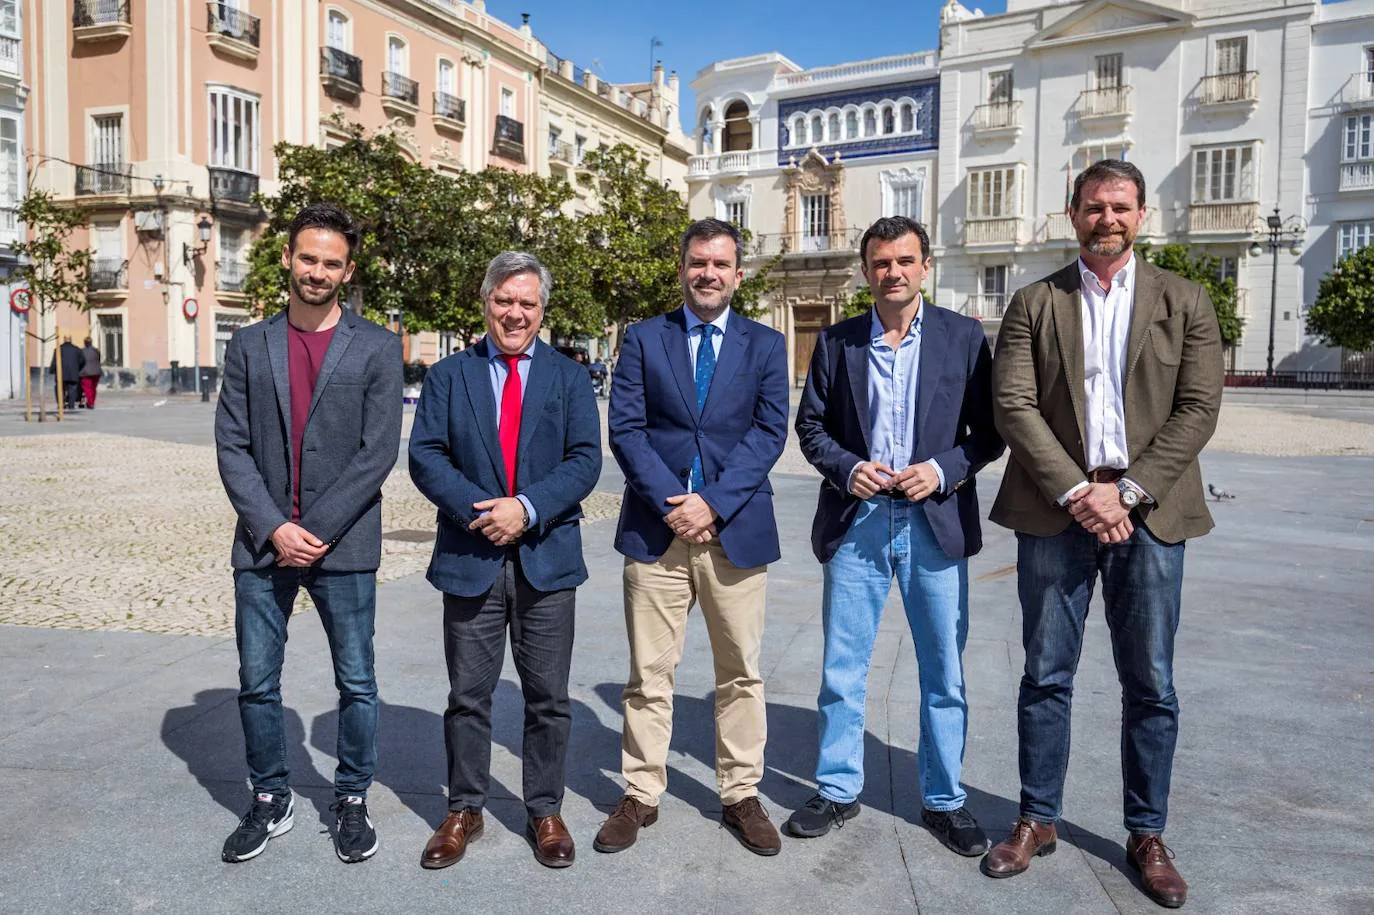 El futuro de Cádiz visto por los principales candidatos a la alcaldía de Cádiz